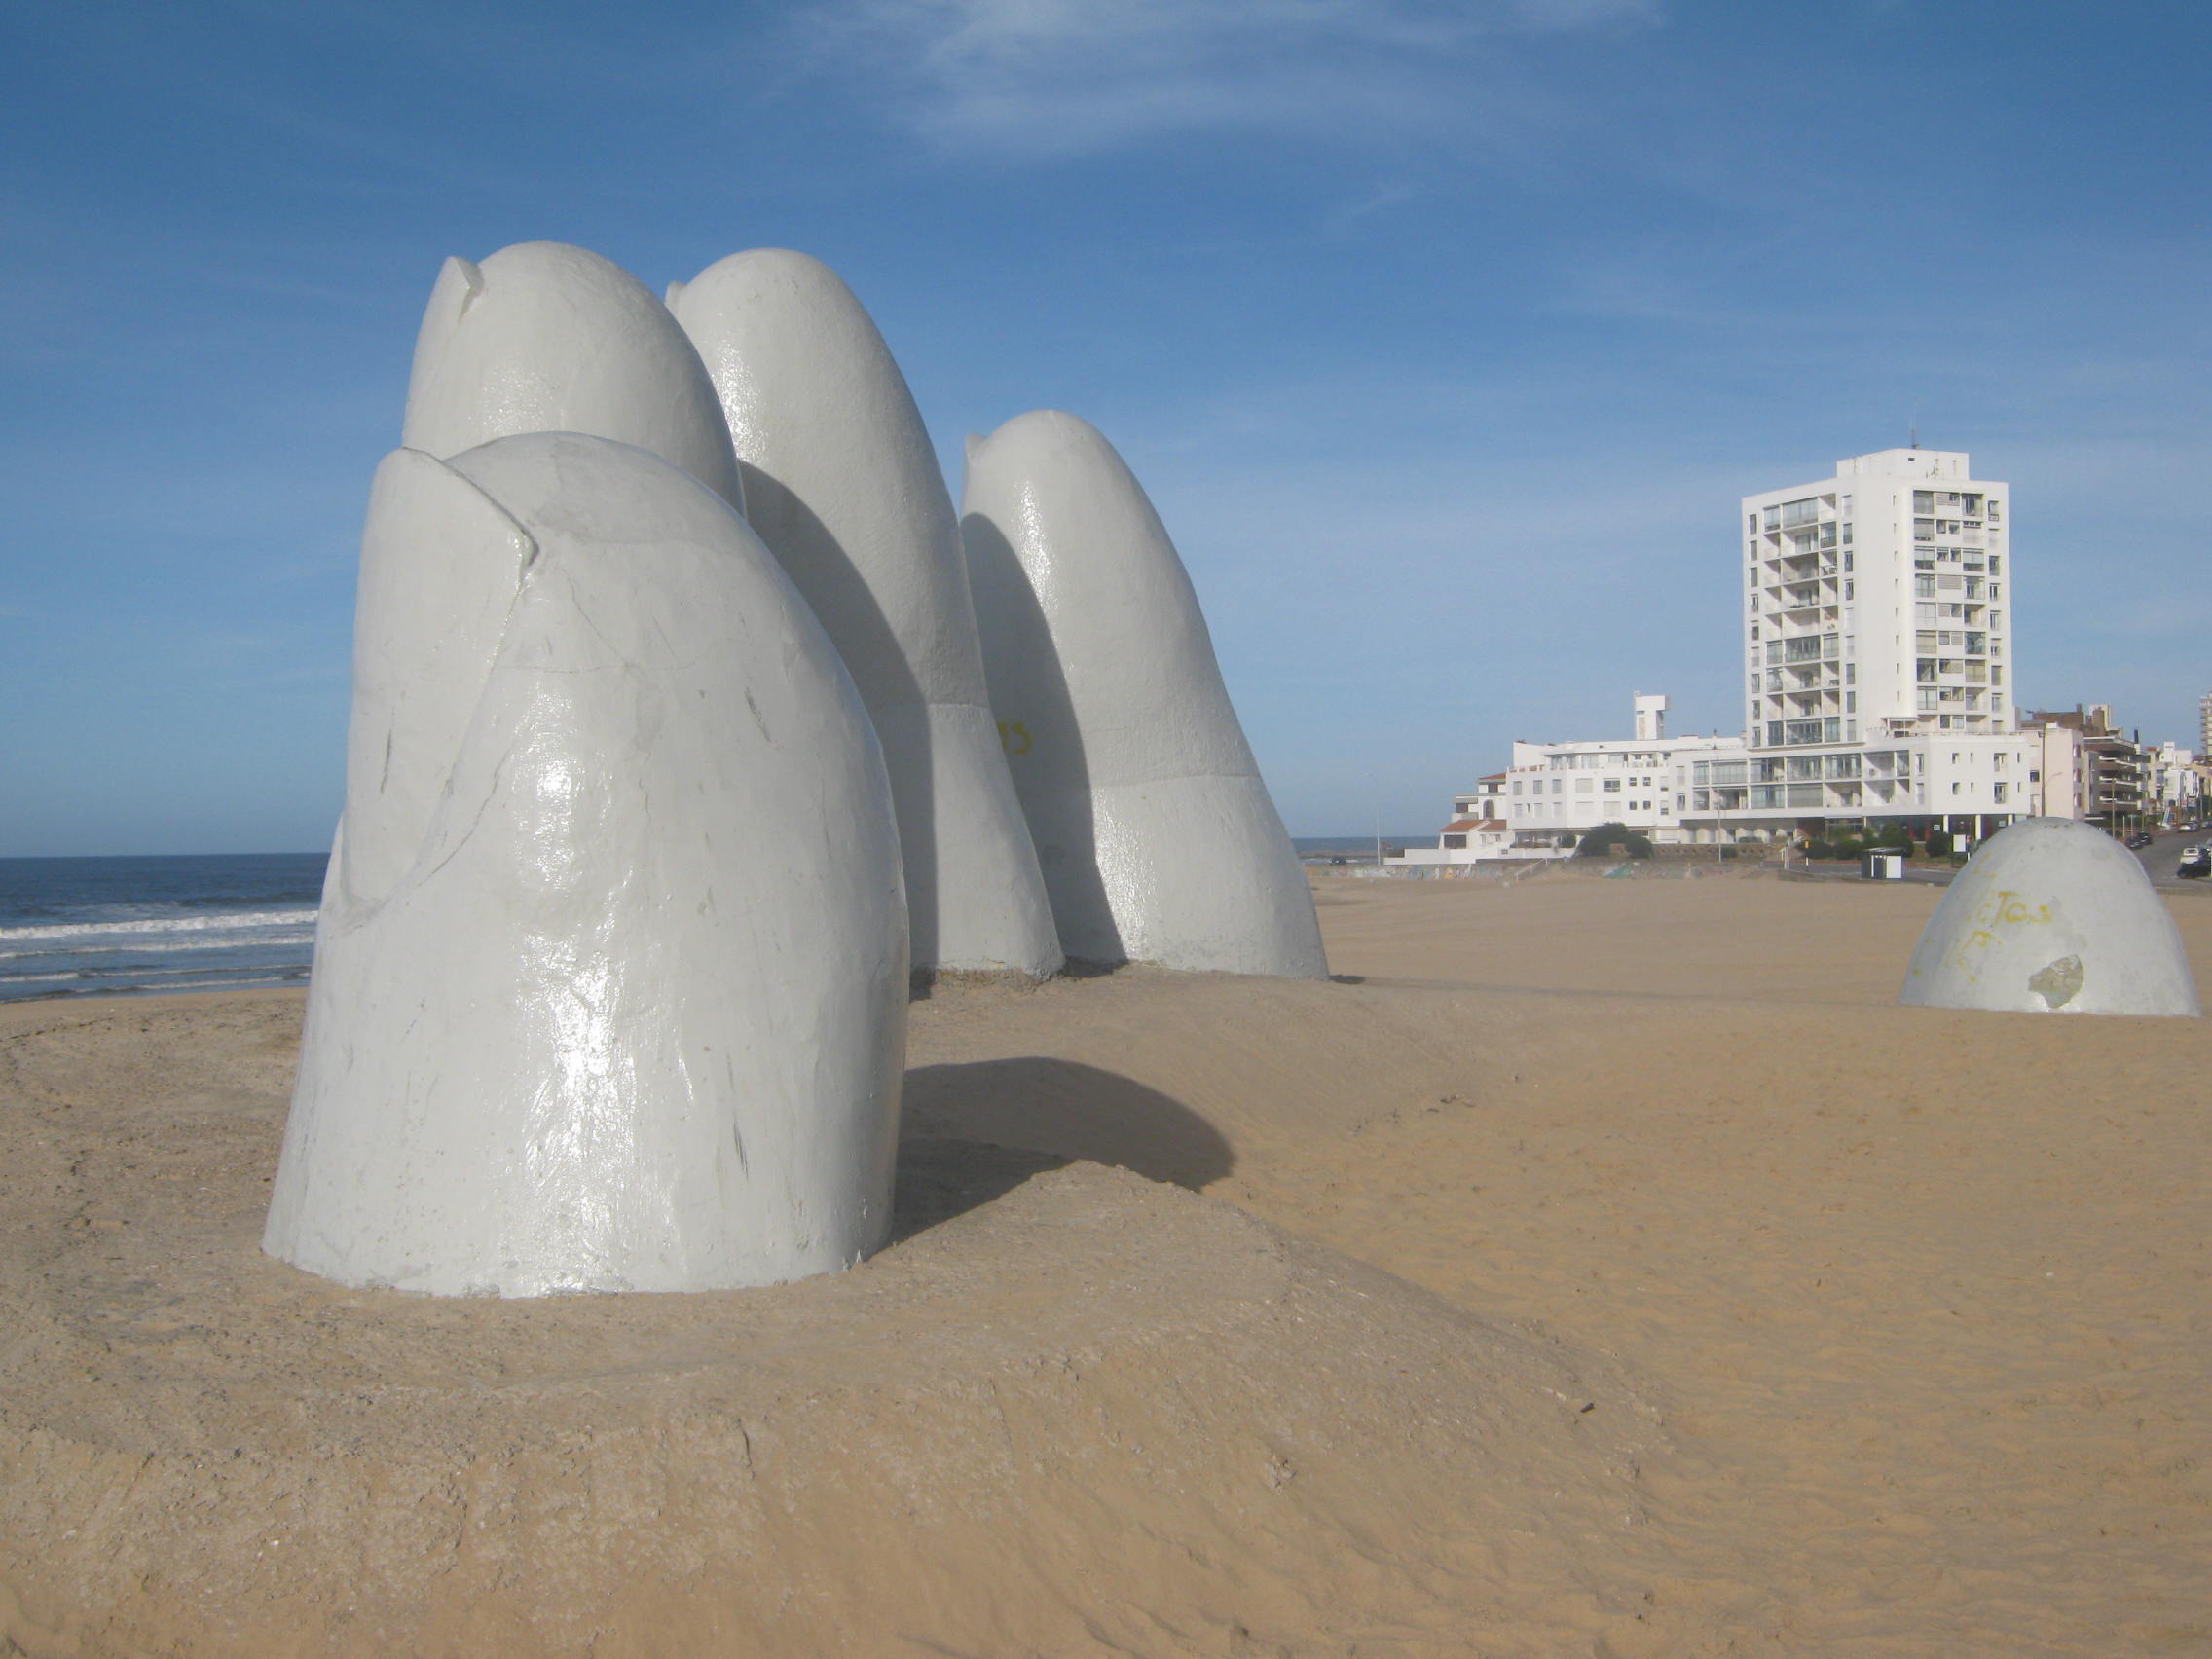 "La Mano" que emerge de la arena fue creada por el artista chileno Mario Irrazábal, en febrero de 1982. Es un ícono de Punta del Este y un lugar muy atractivo para turistas y representativo del lugar.